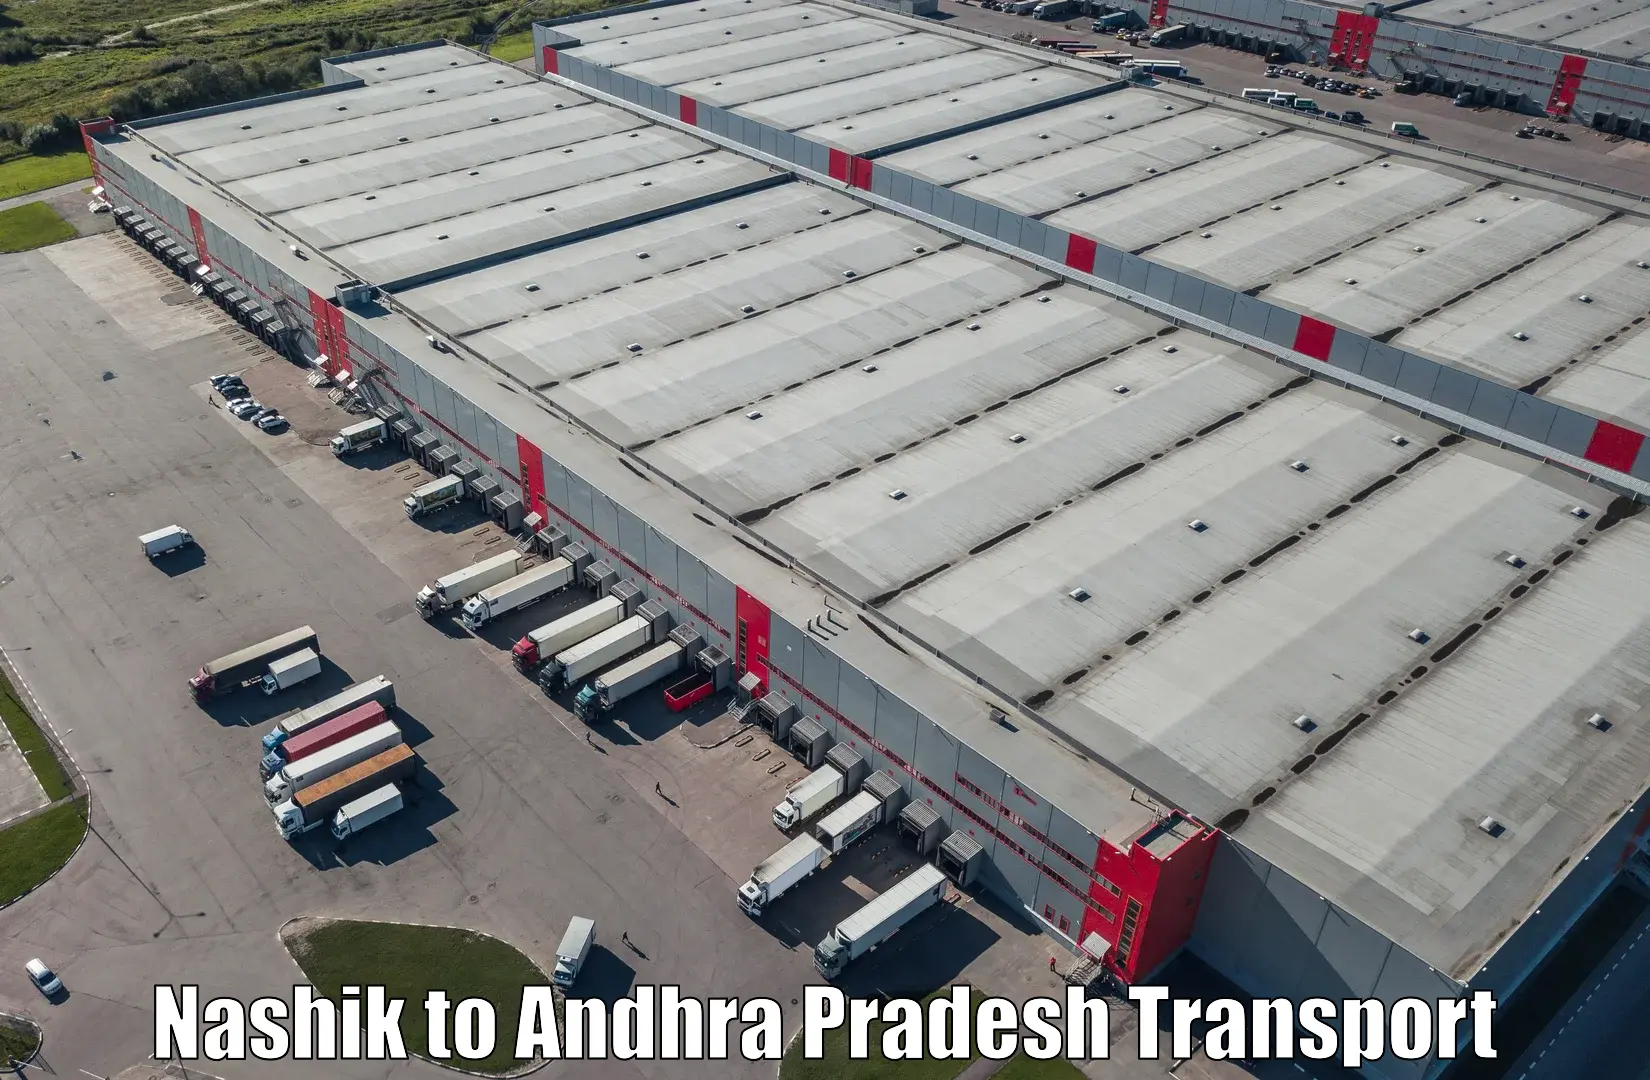 Interstate transport services Nashik to Andhra Pradesh